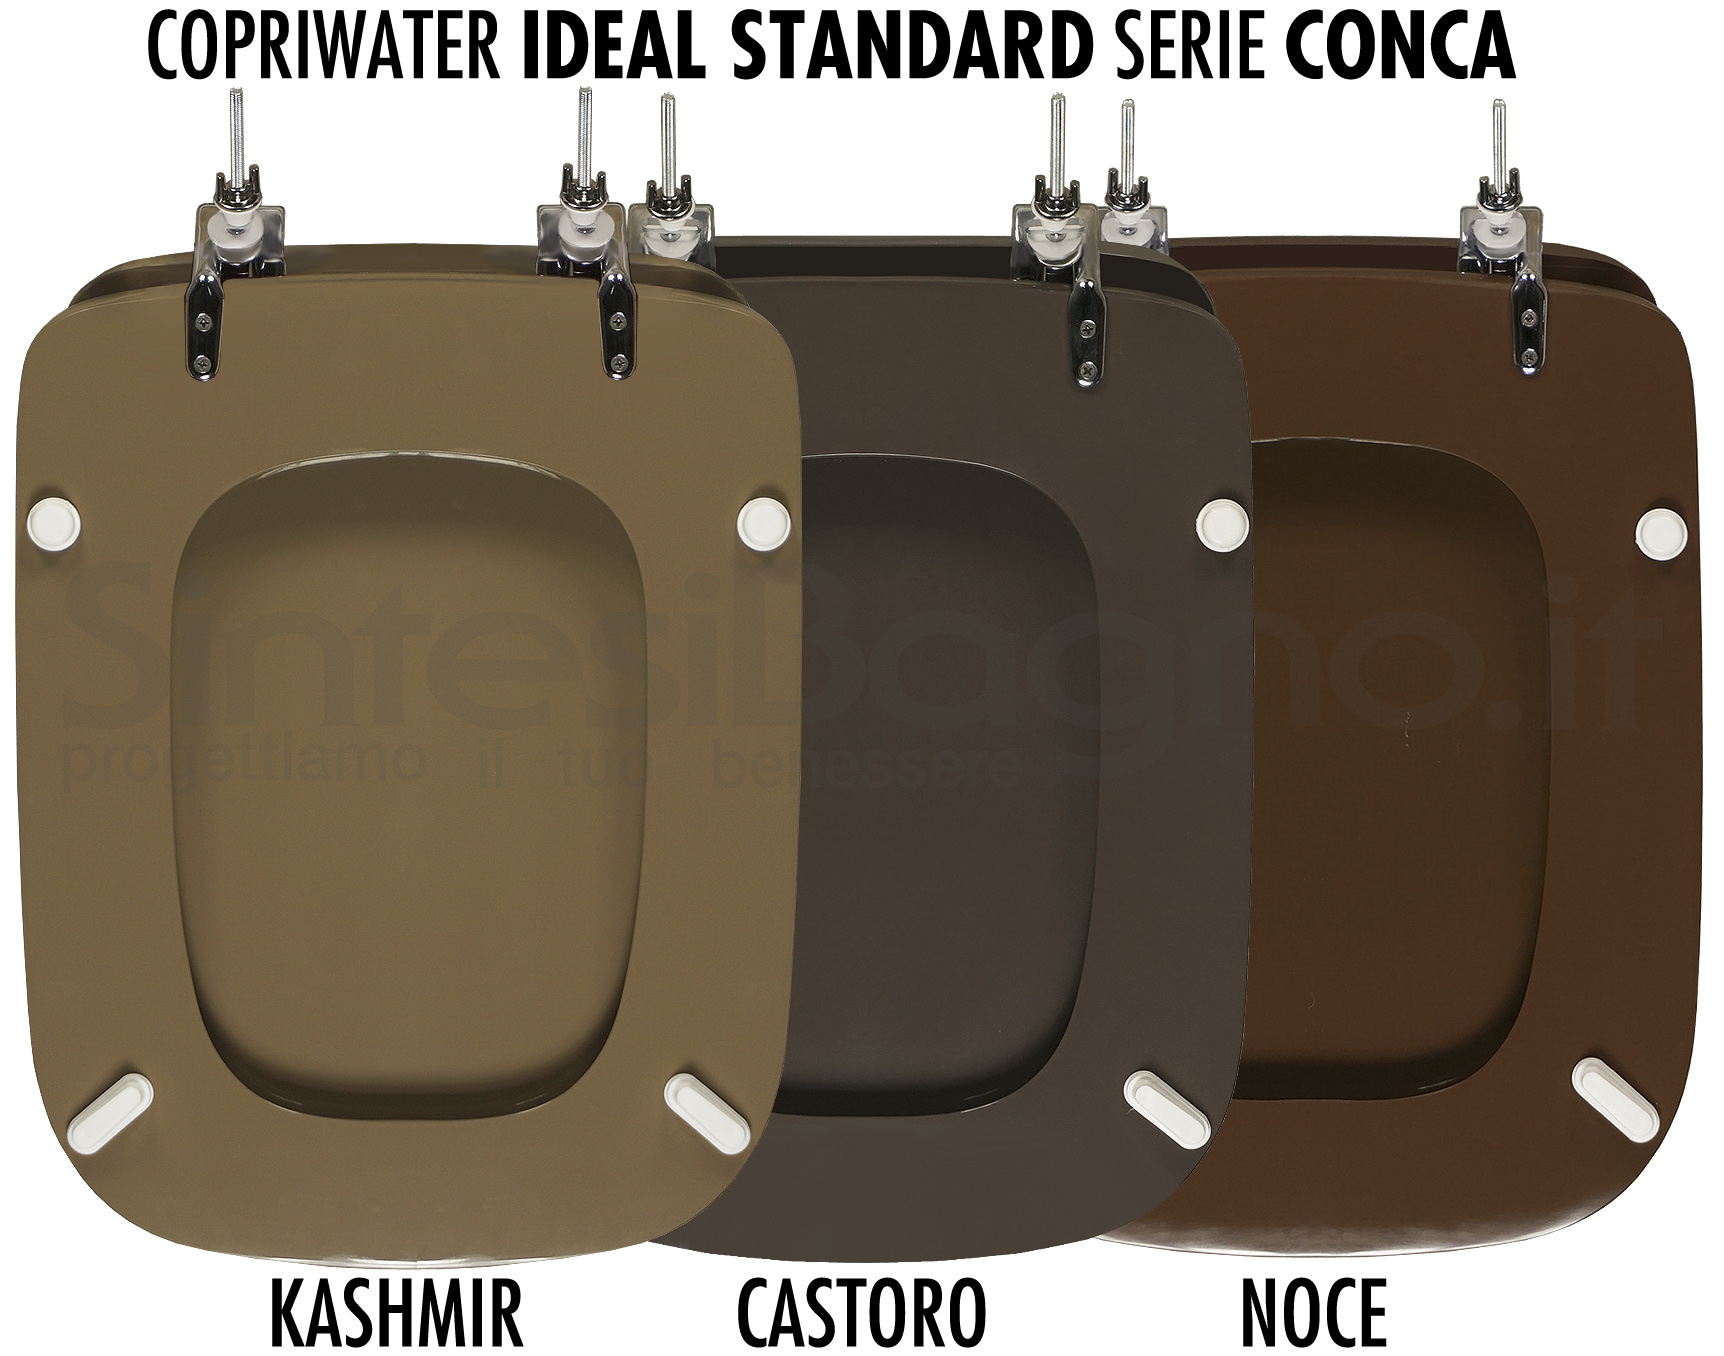 Copriwater Ideal Standard Conca il colore marrone